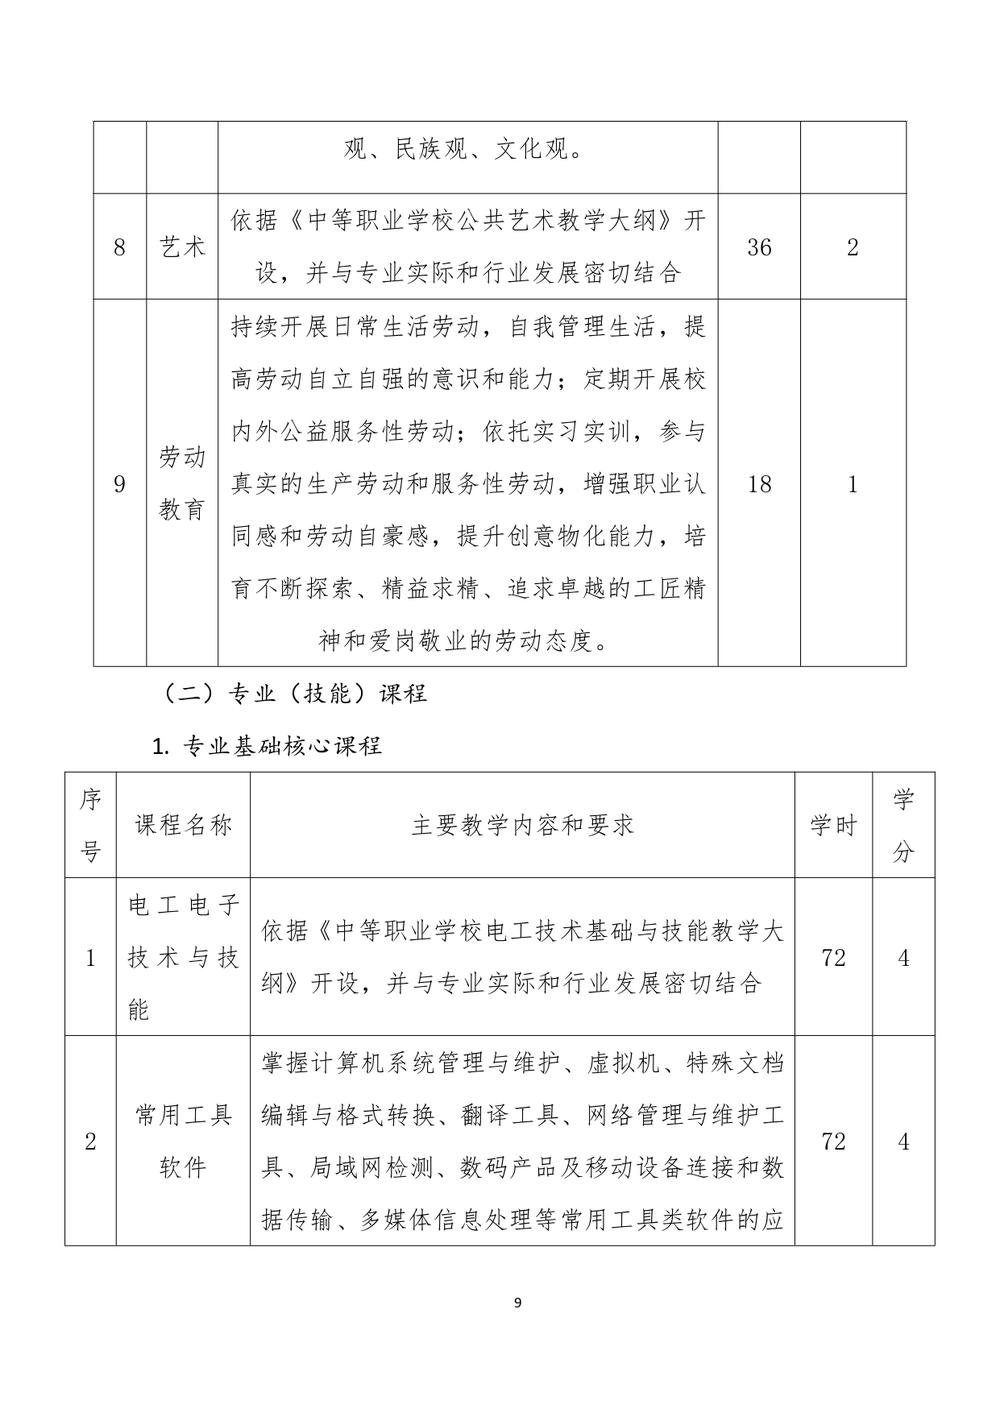 2_郑州市信息技术学校 - 计算机网络技术人才培养方案（09.04）(1)_page-0010